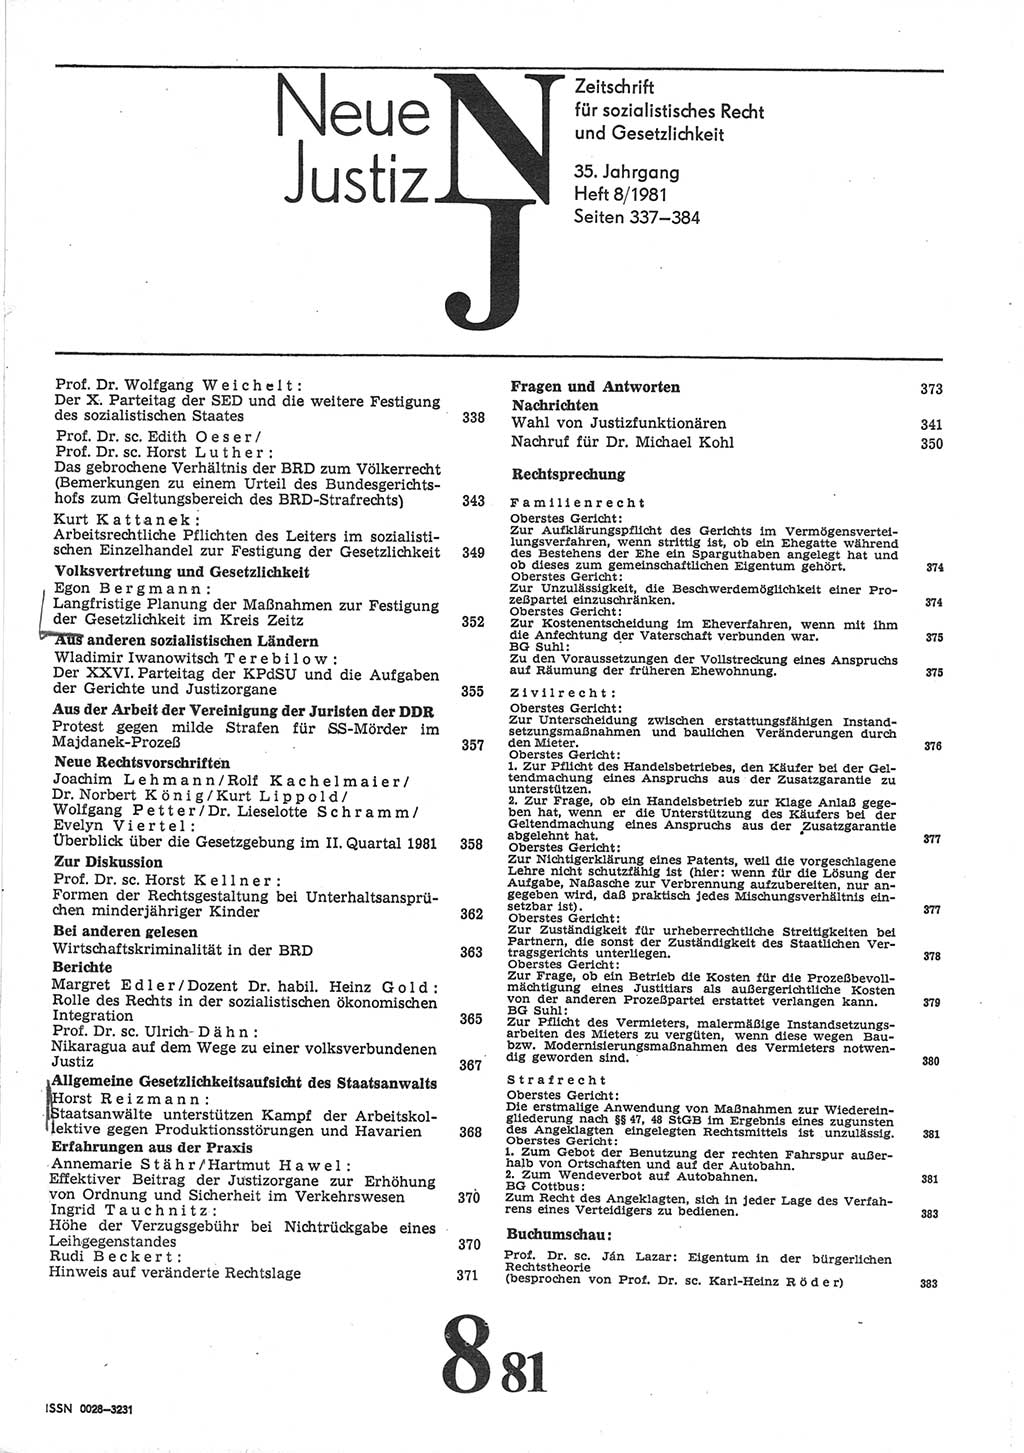 Neue Justiz (NJ), Zeitschrift für sozialistisches Recht und Gesetzlichkeit [Deutsche Demokratische Republik (DDR)], 35. Jahrgang 1981, Seite 337 (NJ DDR 1981, S. 337)